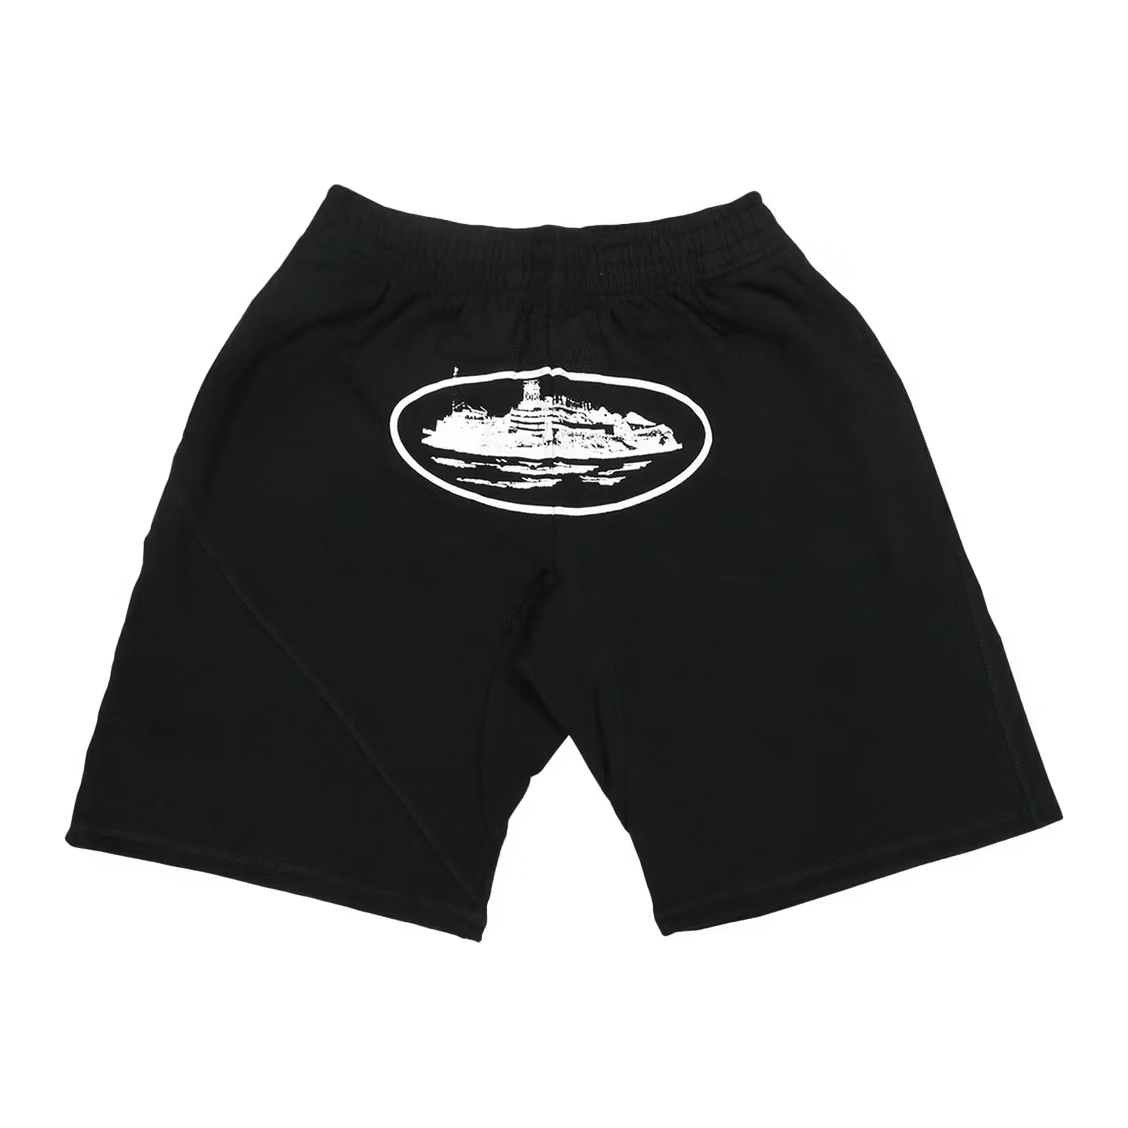 Corteiz OG Alcatraz Shorts by Corteiz from £130.00